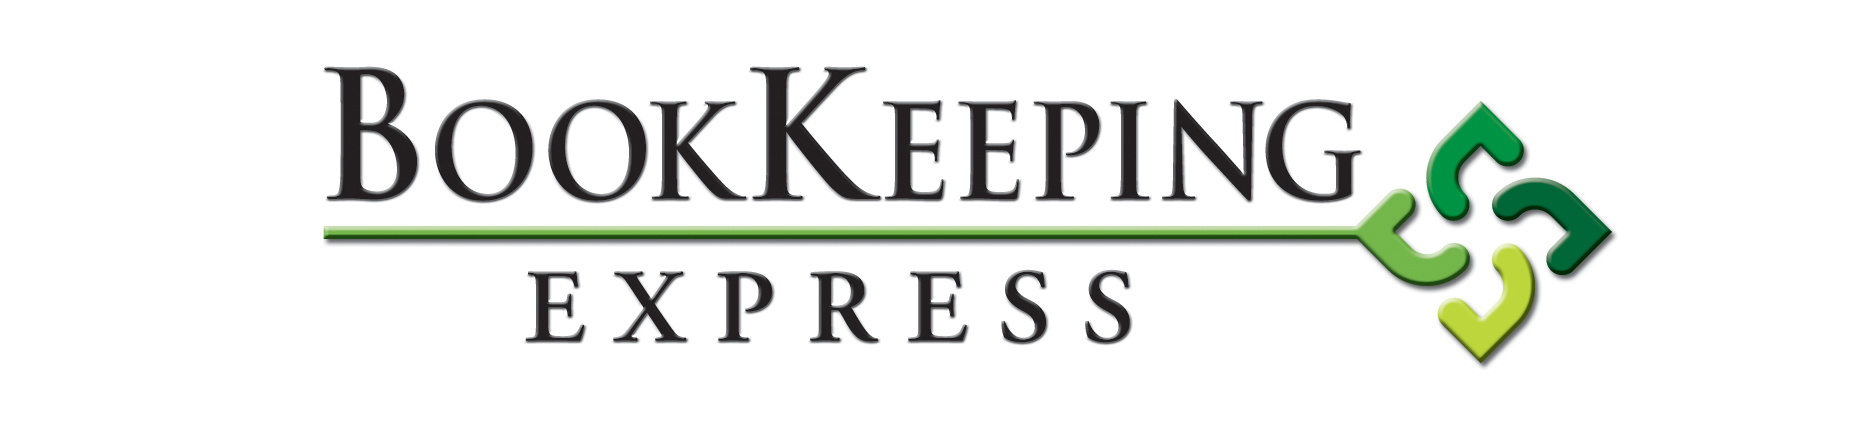 BookKeeping Express Logo